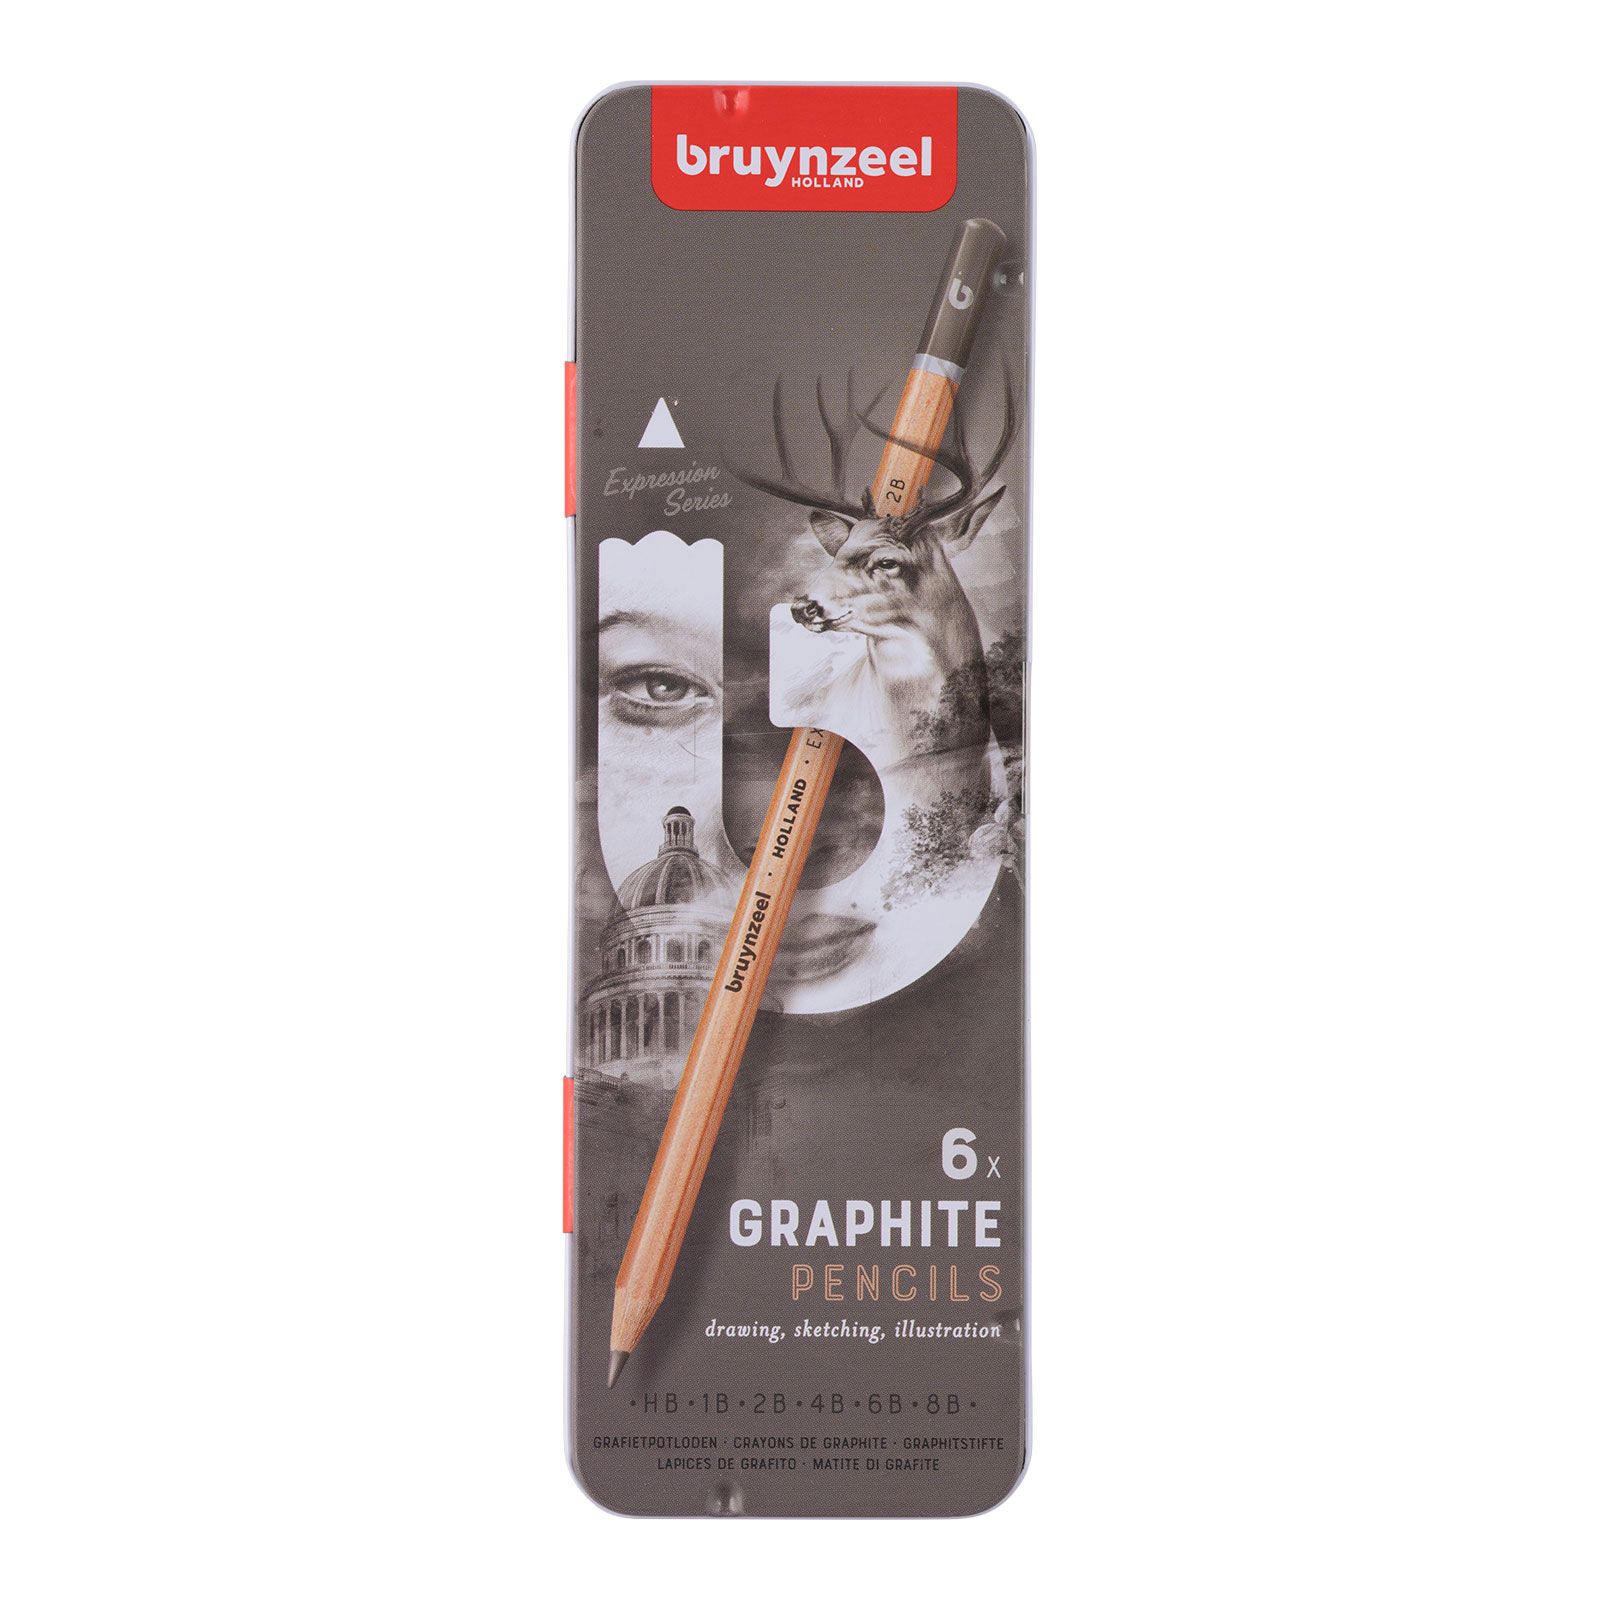 Bruynzeel • Expression Graphite Pencils Tin 6